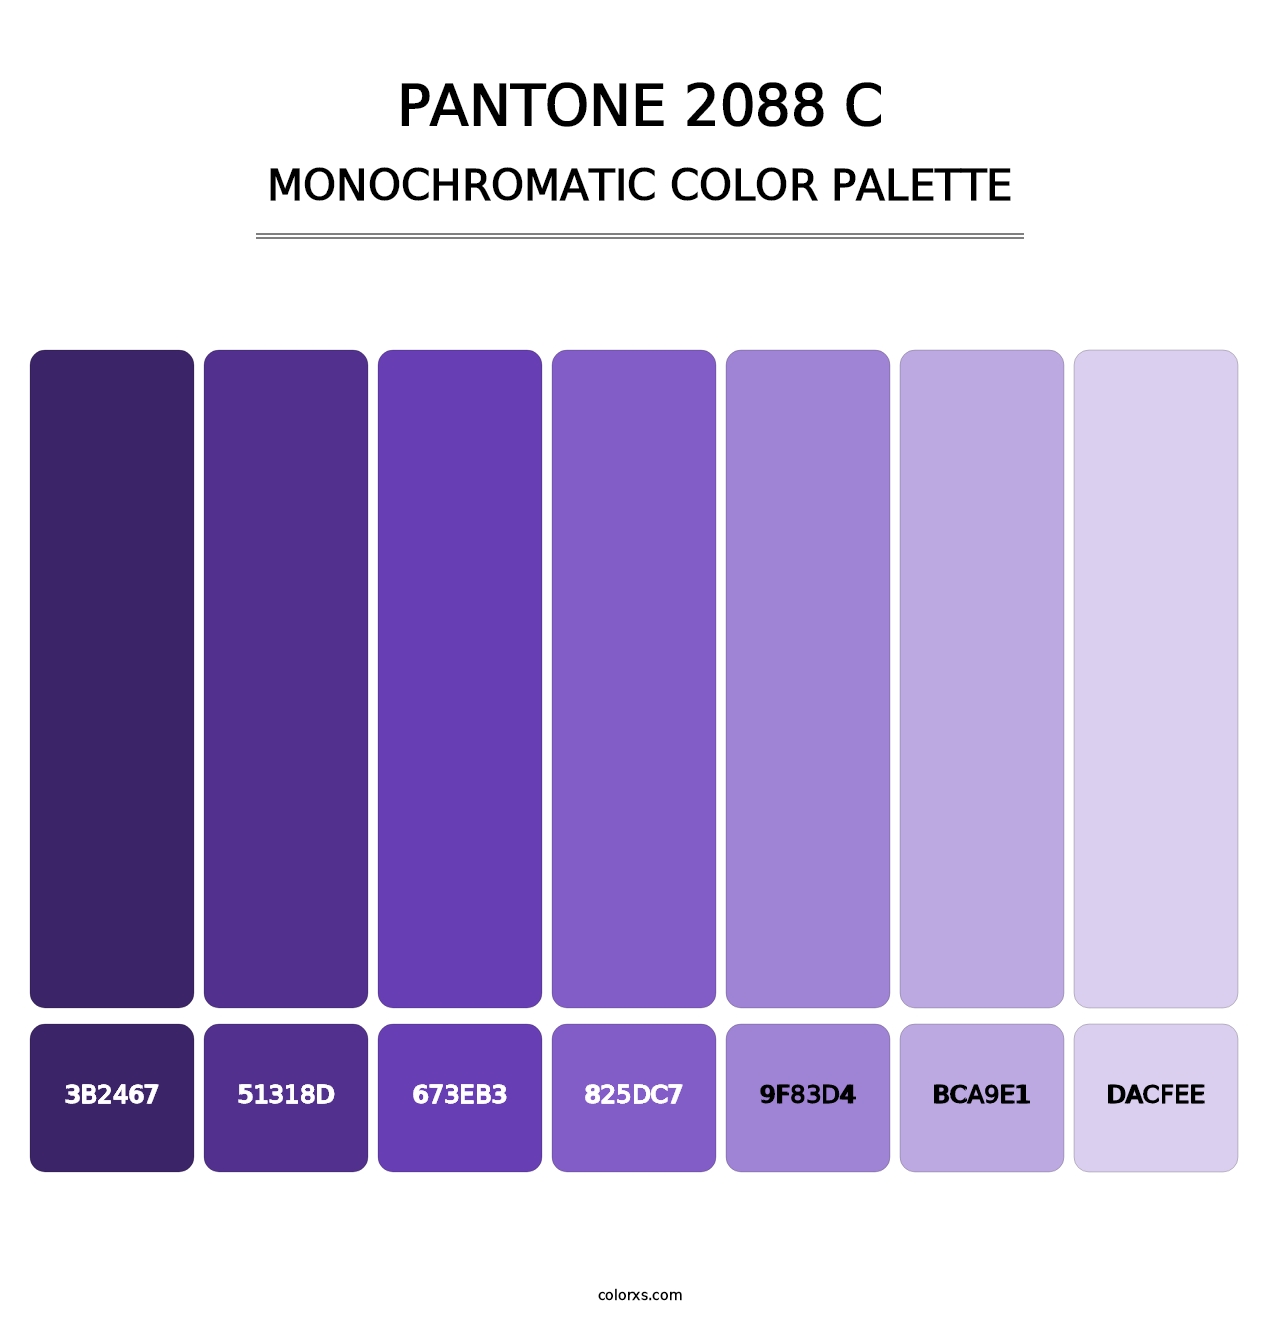 PANTONE 2088 C - Monochromatic Color Palette